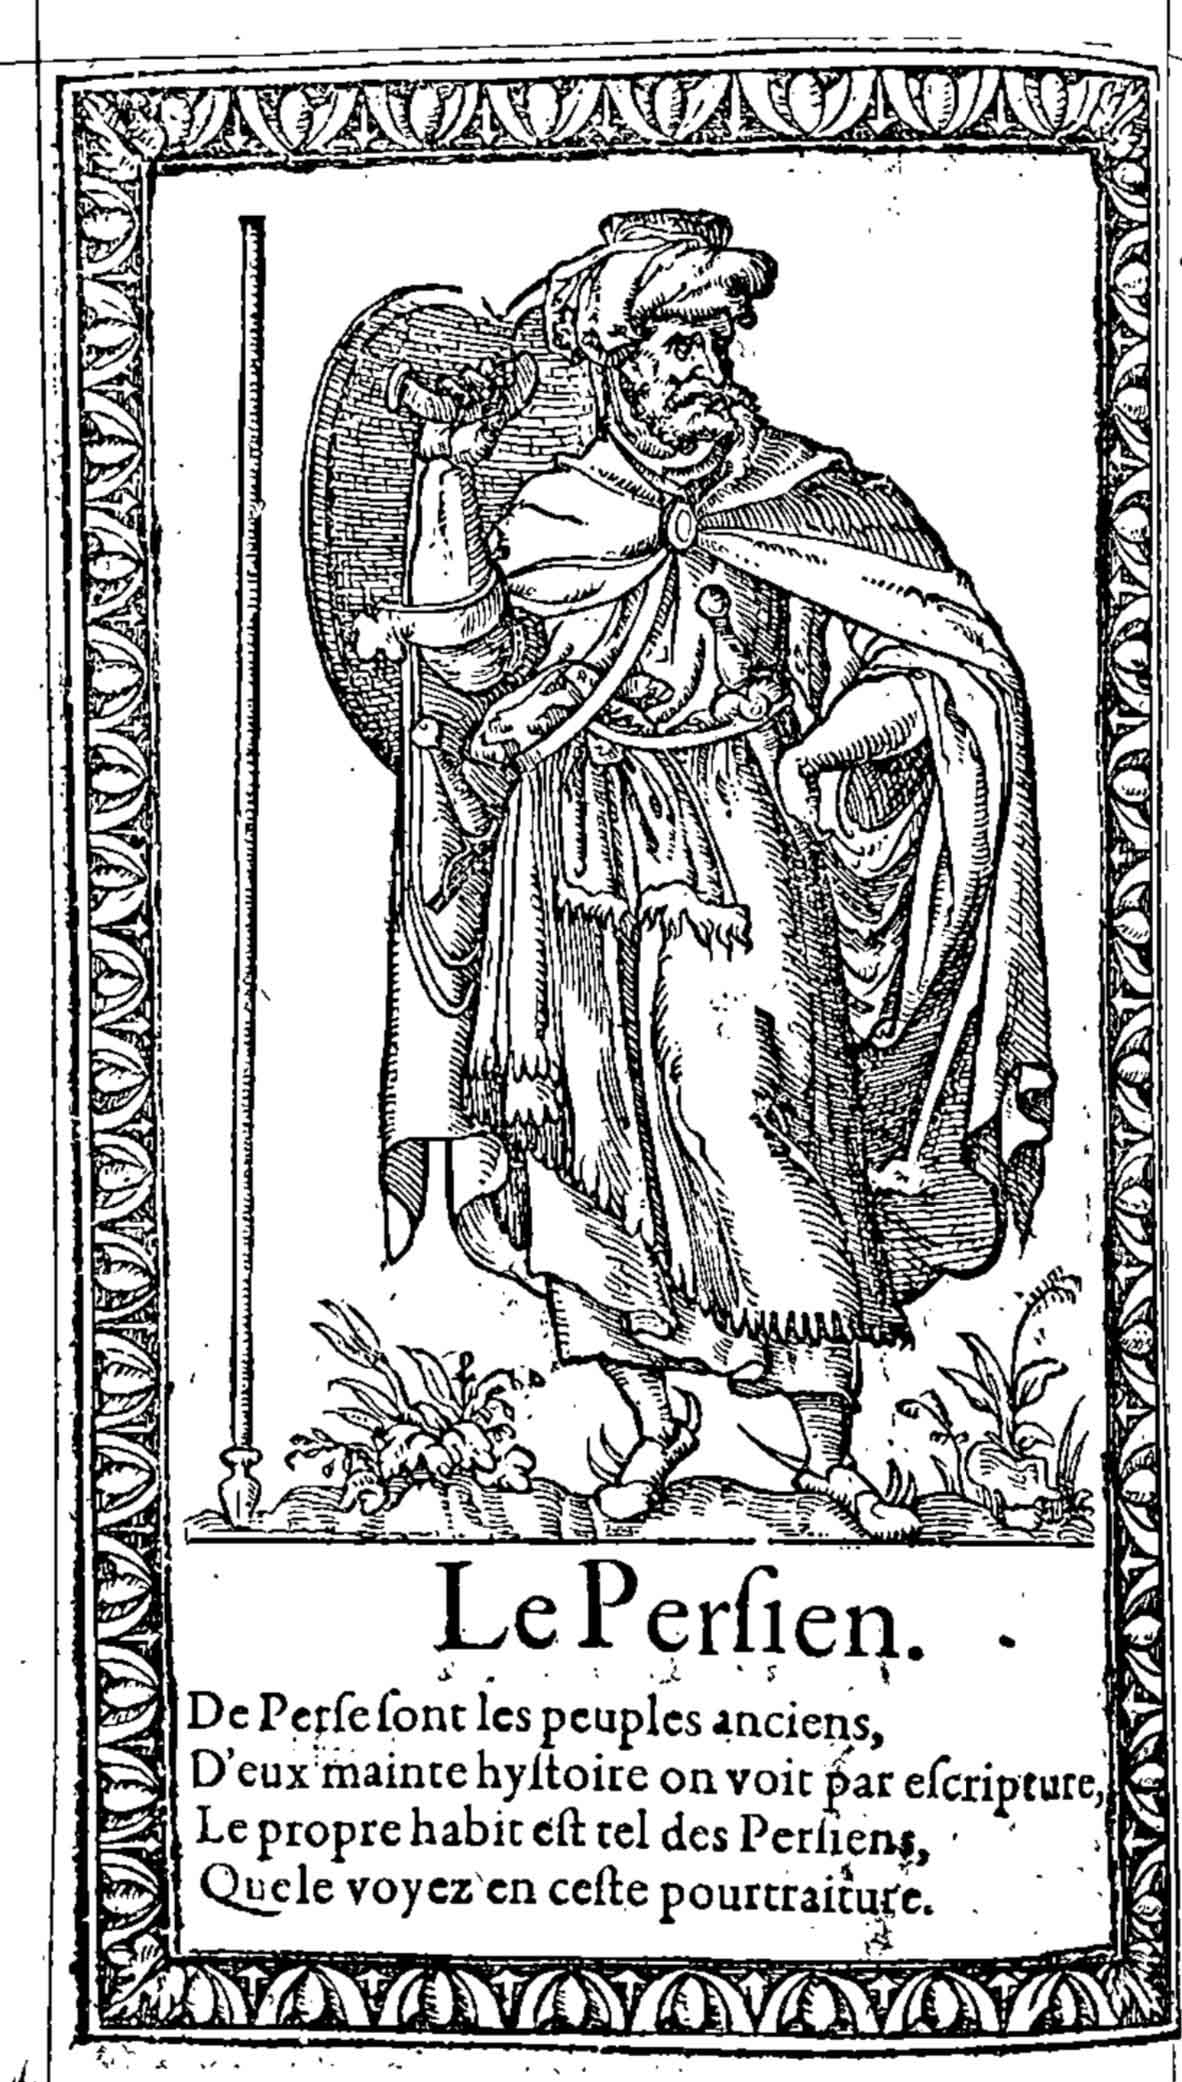 Le Persien. Desprez, Recueil de la diversité des habits (1564)